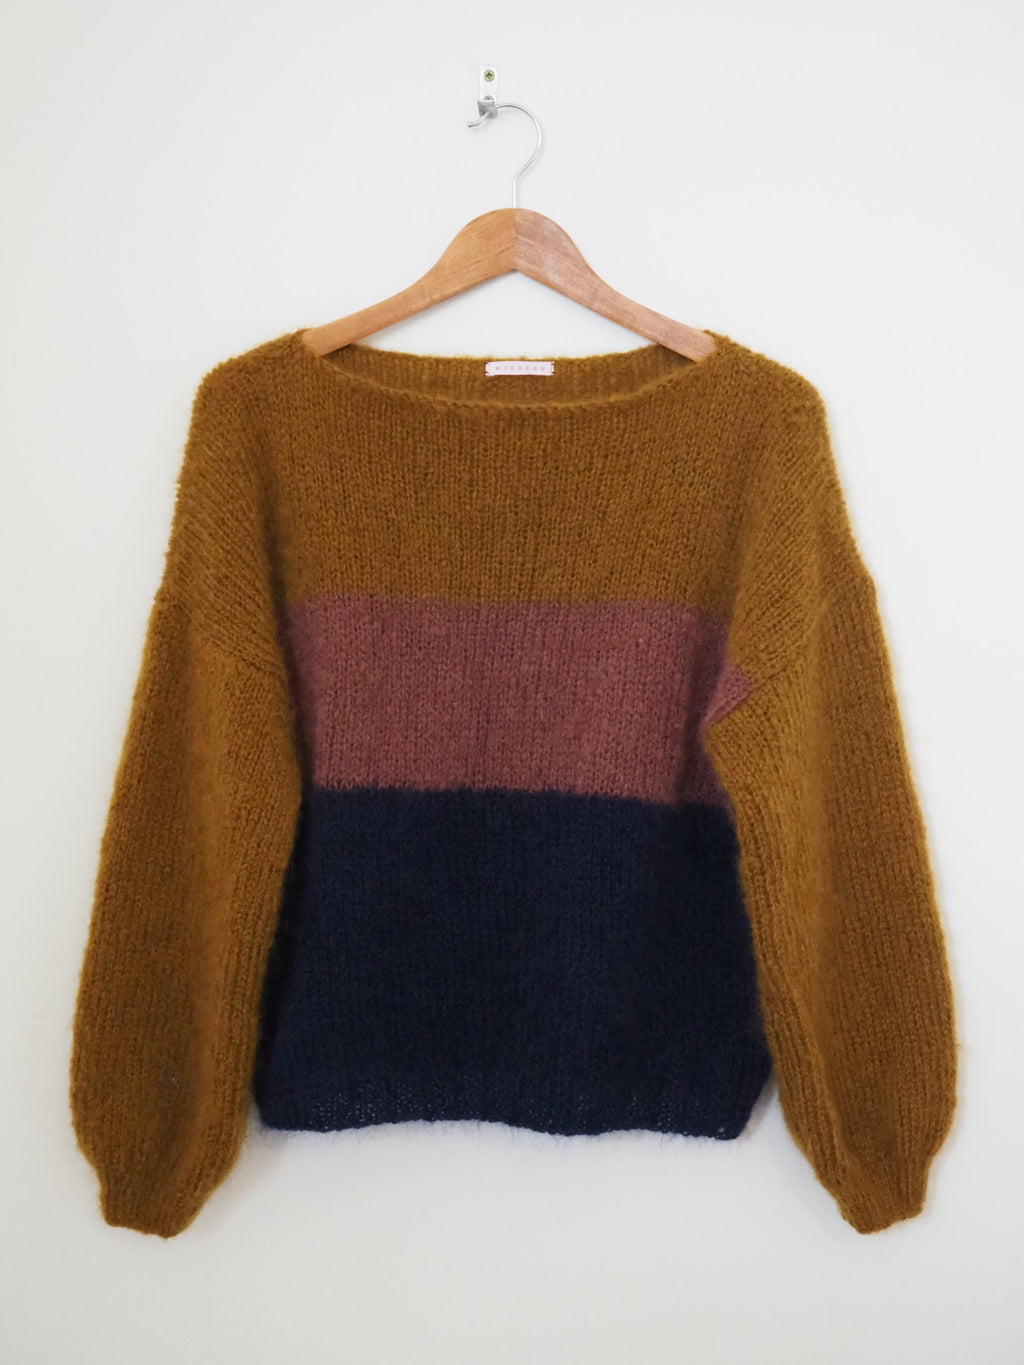 Hand knit jumper - Warm tones